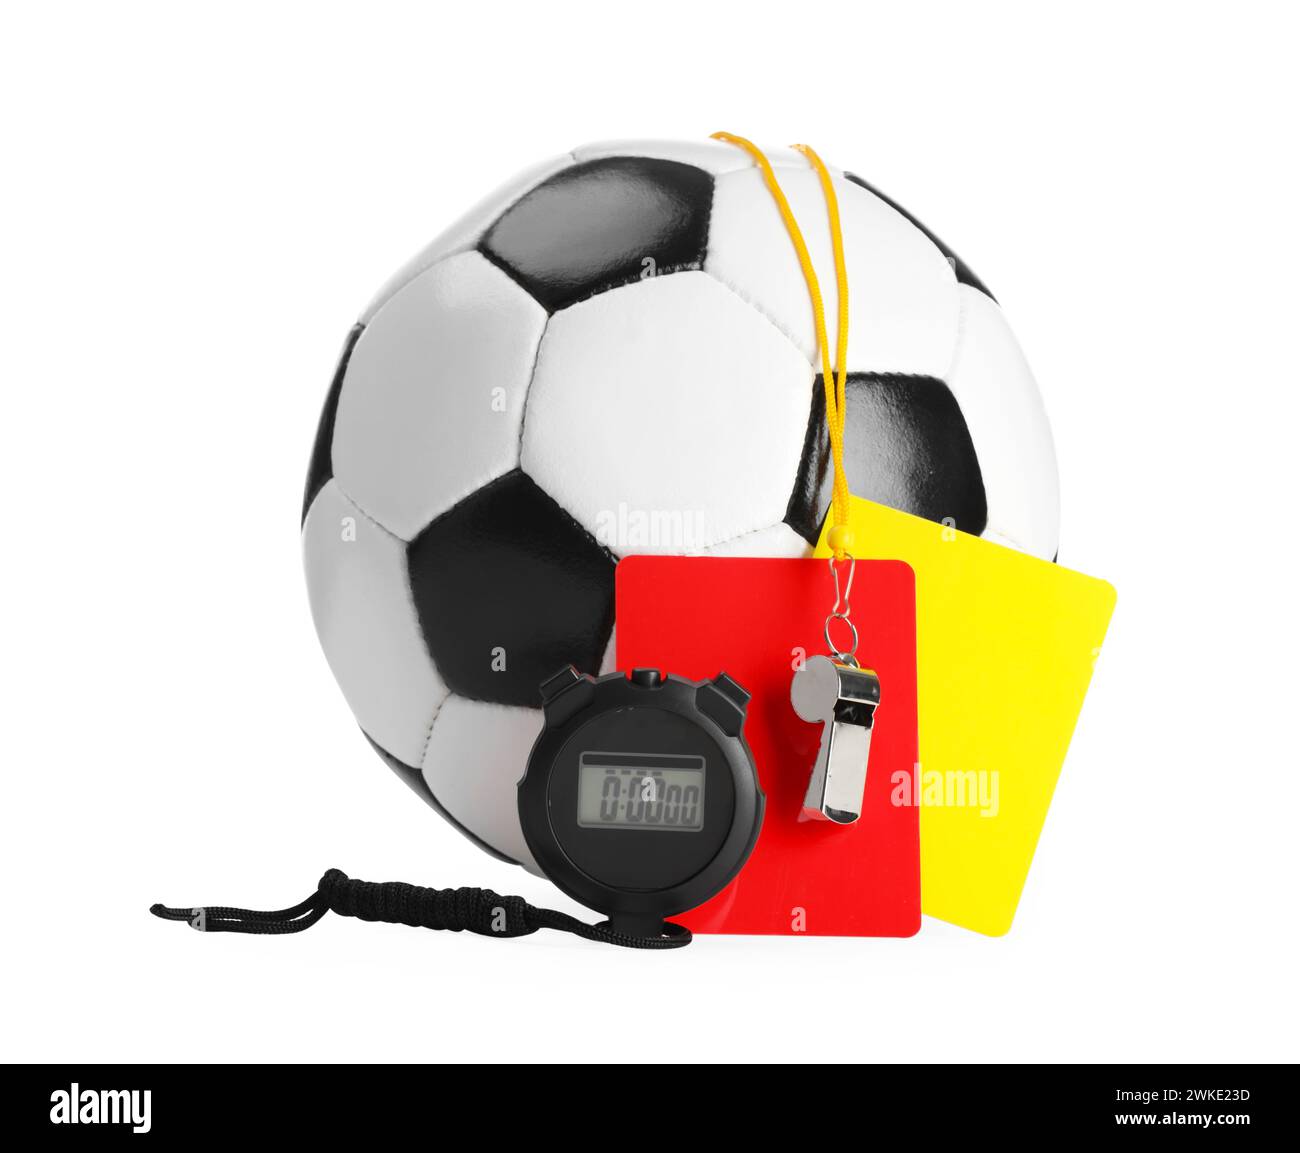 Équipement d'arbitre. Ballon de football, sifflet, chronomètre et cartes isolés sur blanc Banque D'Images